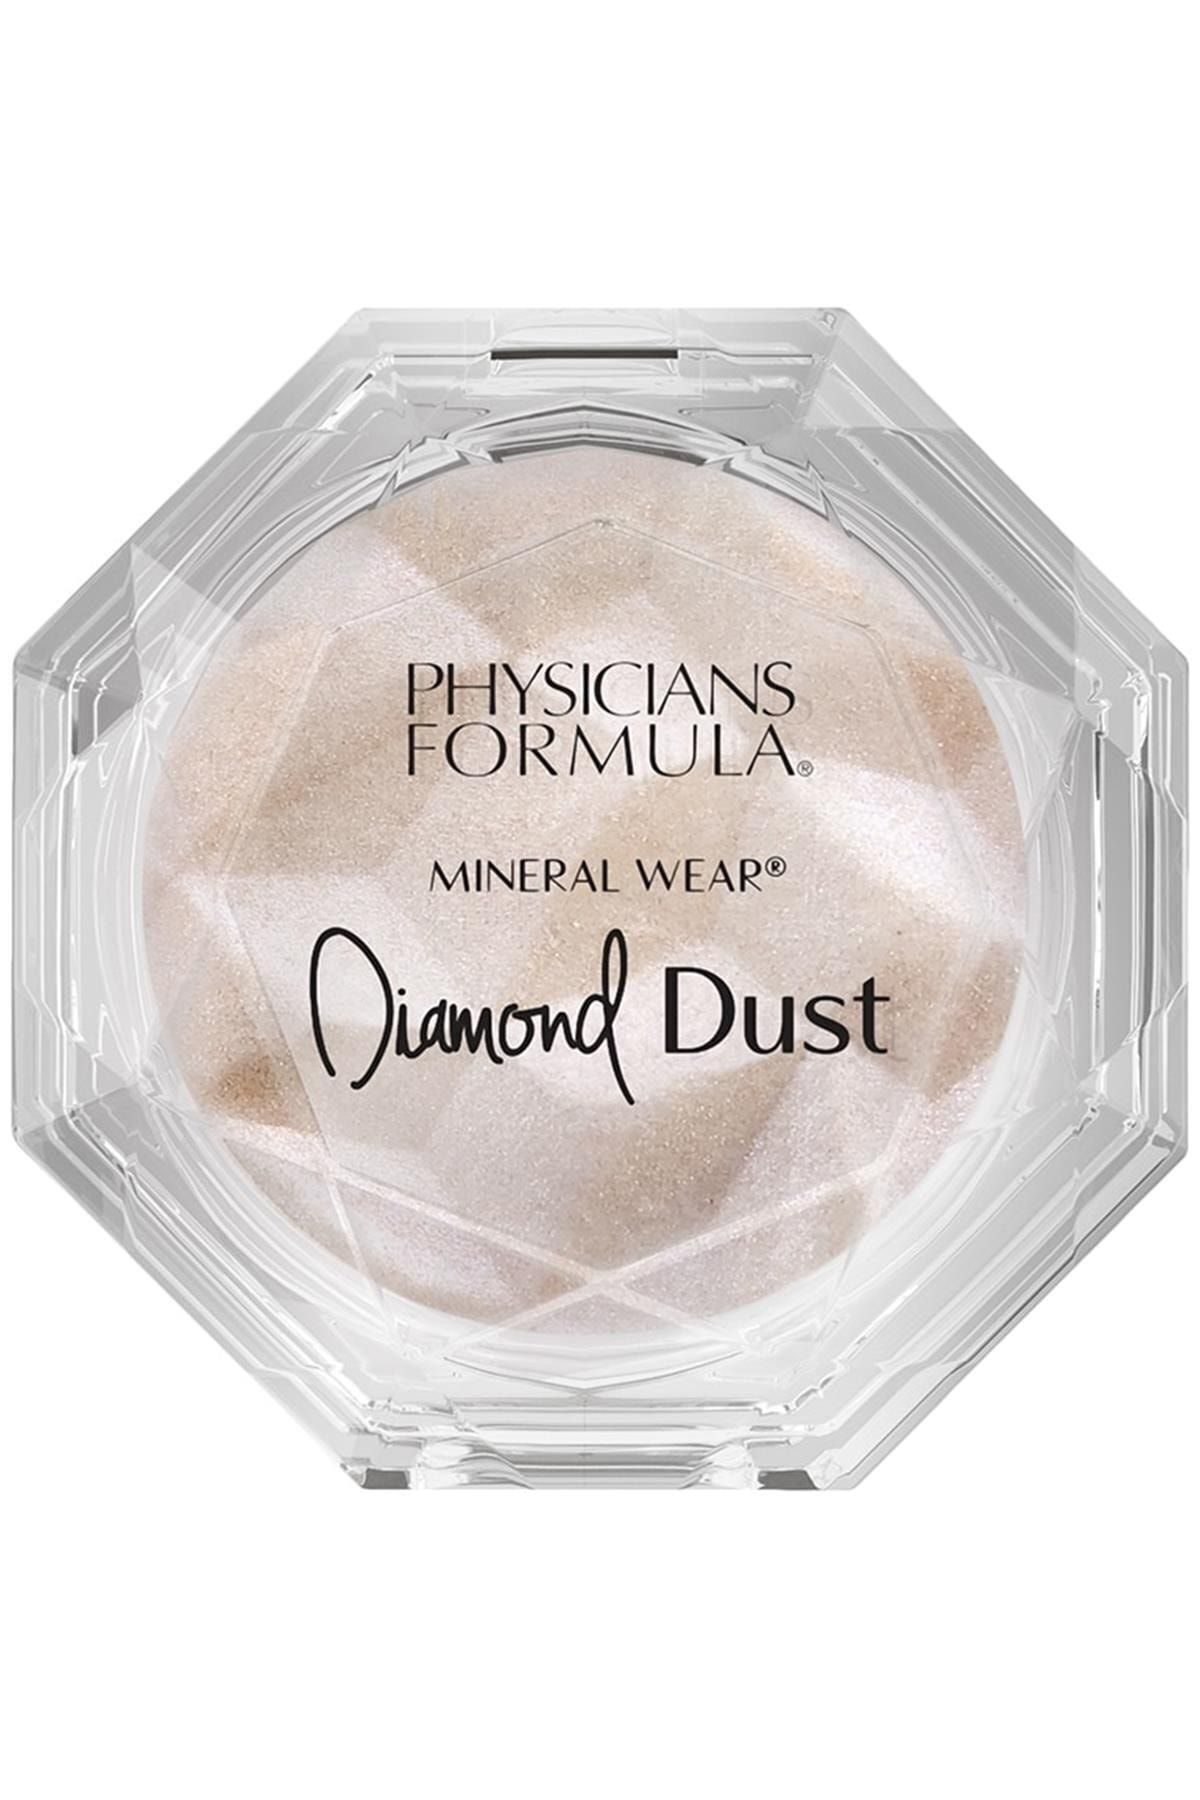 Physicians Formula Marka: Mineral Wear Diamond Glow Dust Pudra Starlit Kategori: Pudra